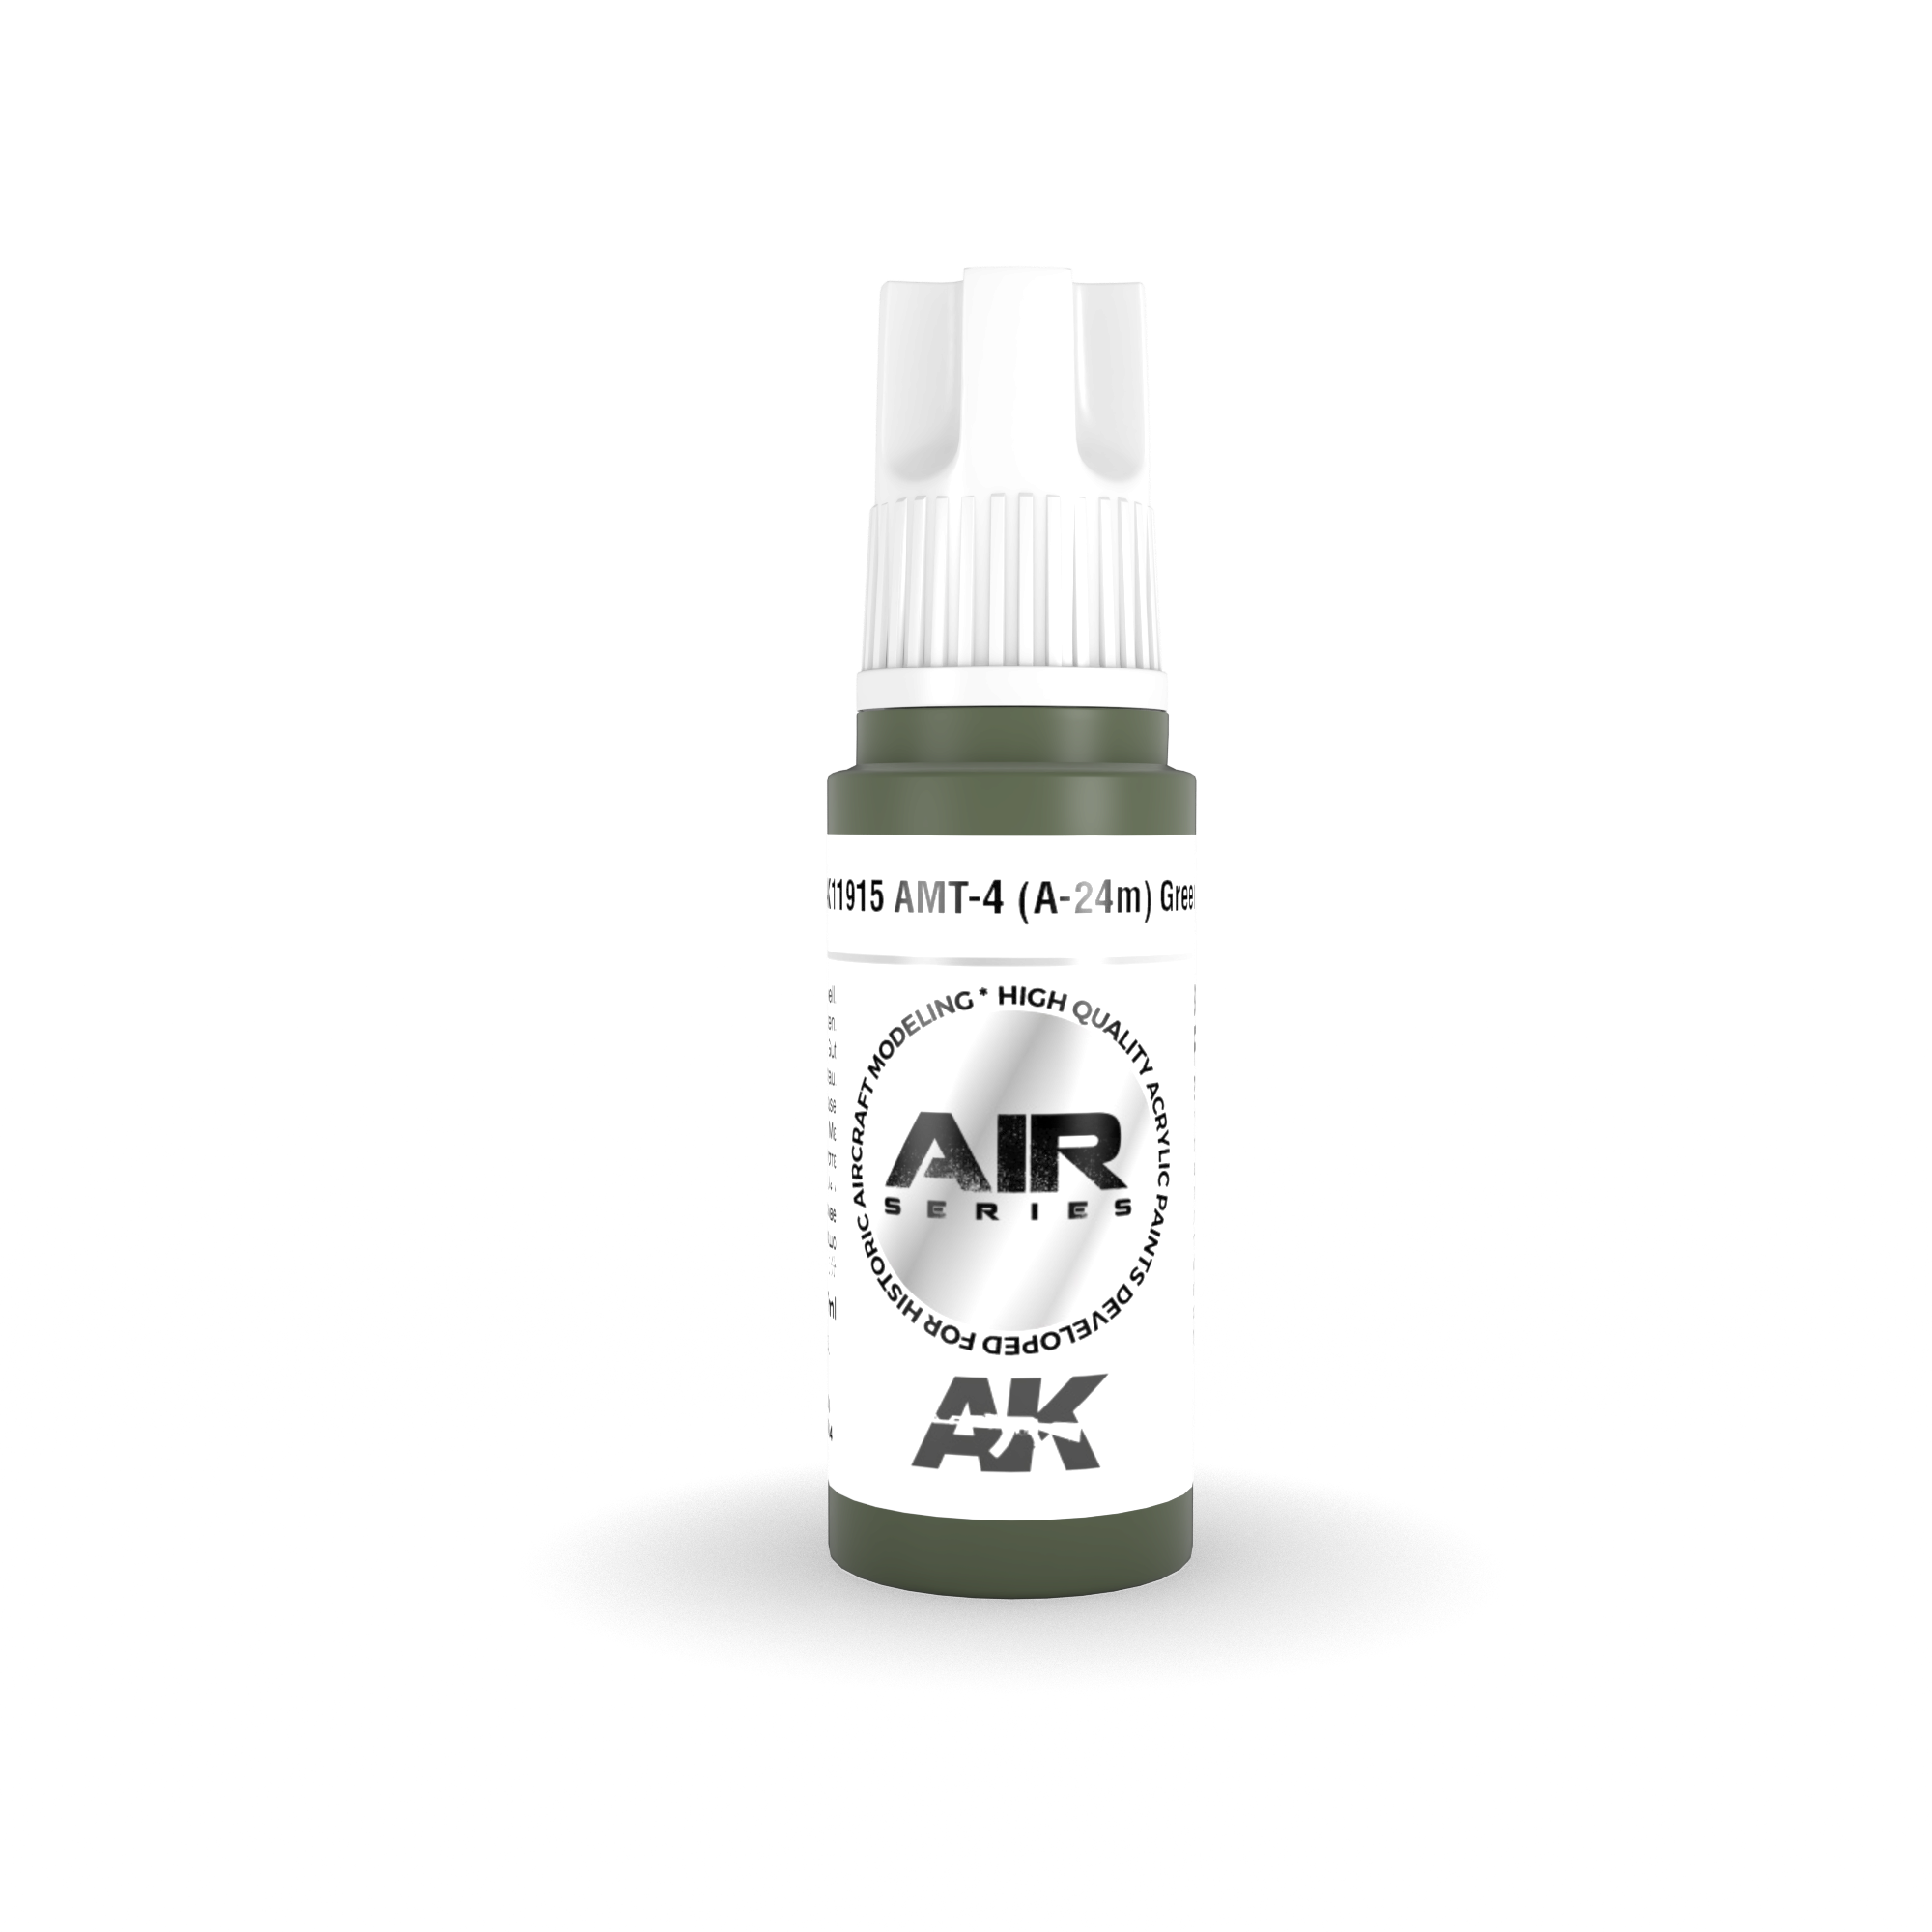 AK AK11915 3rd gen. AMT-4 (A-24m) Green